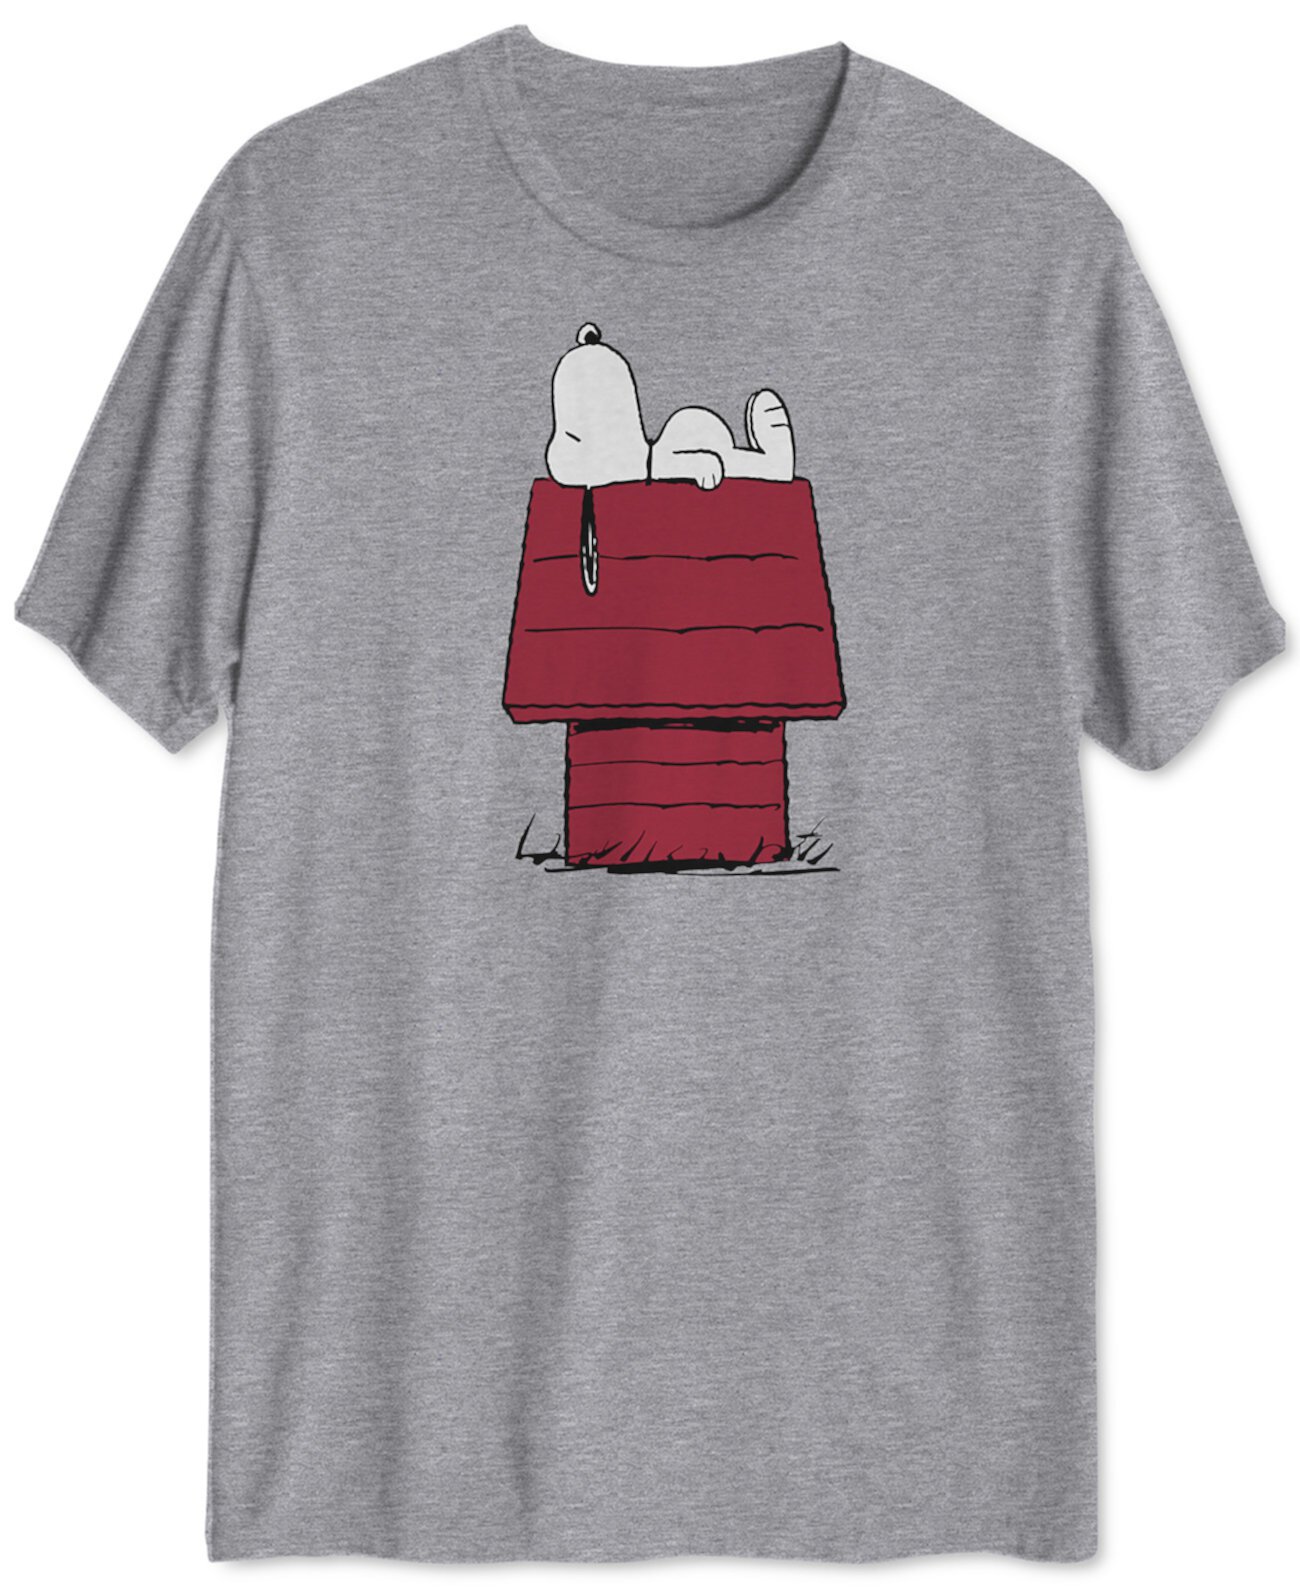 Мужская футболка с рисунком Snoopy Doghouse Hybrid